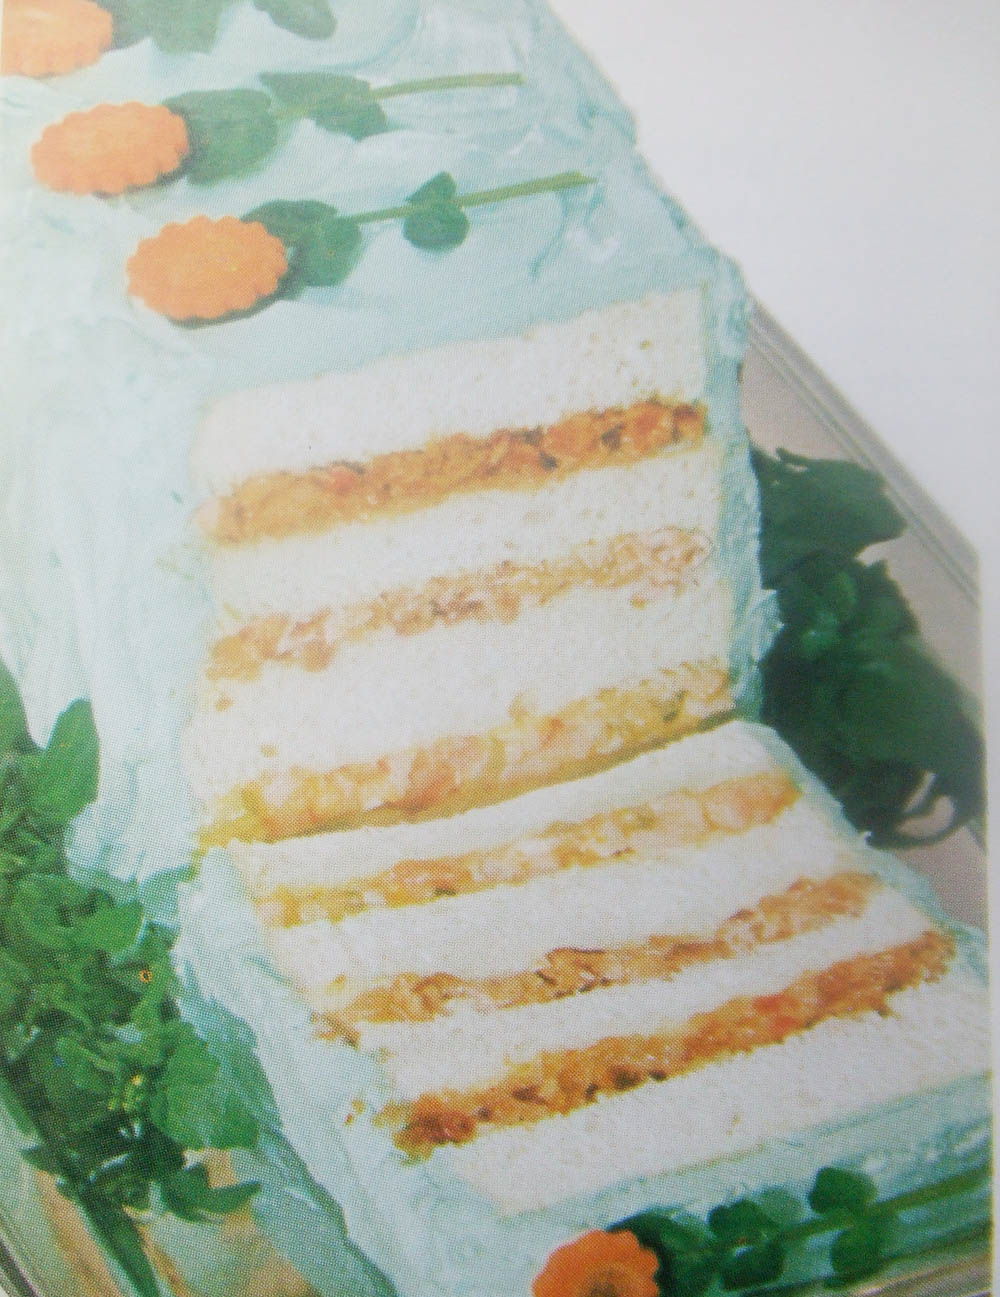 three-layer-cake